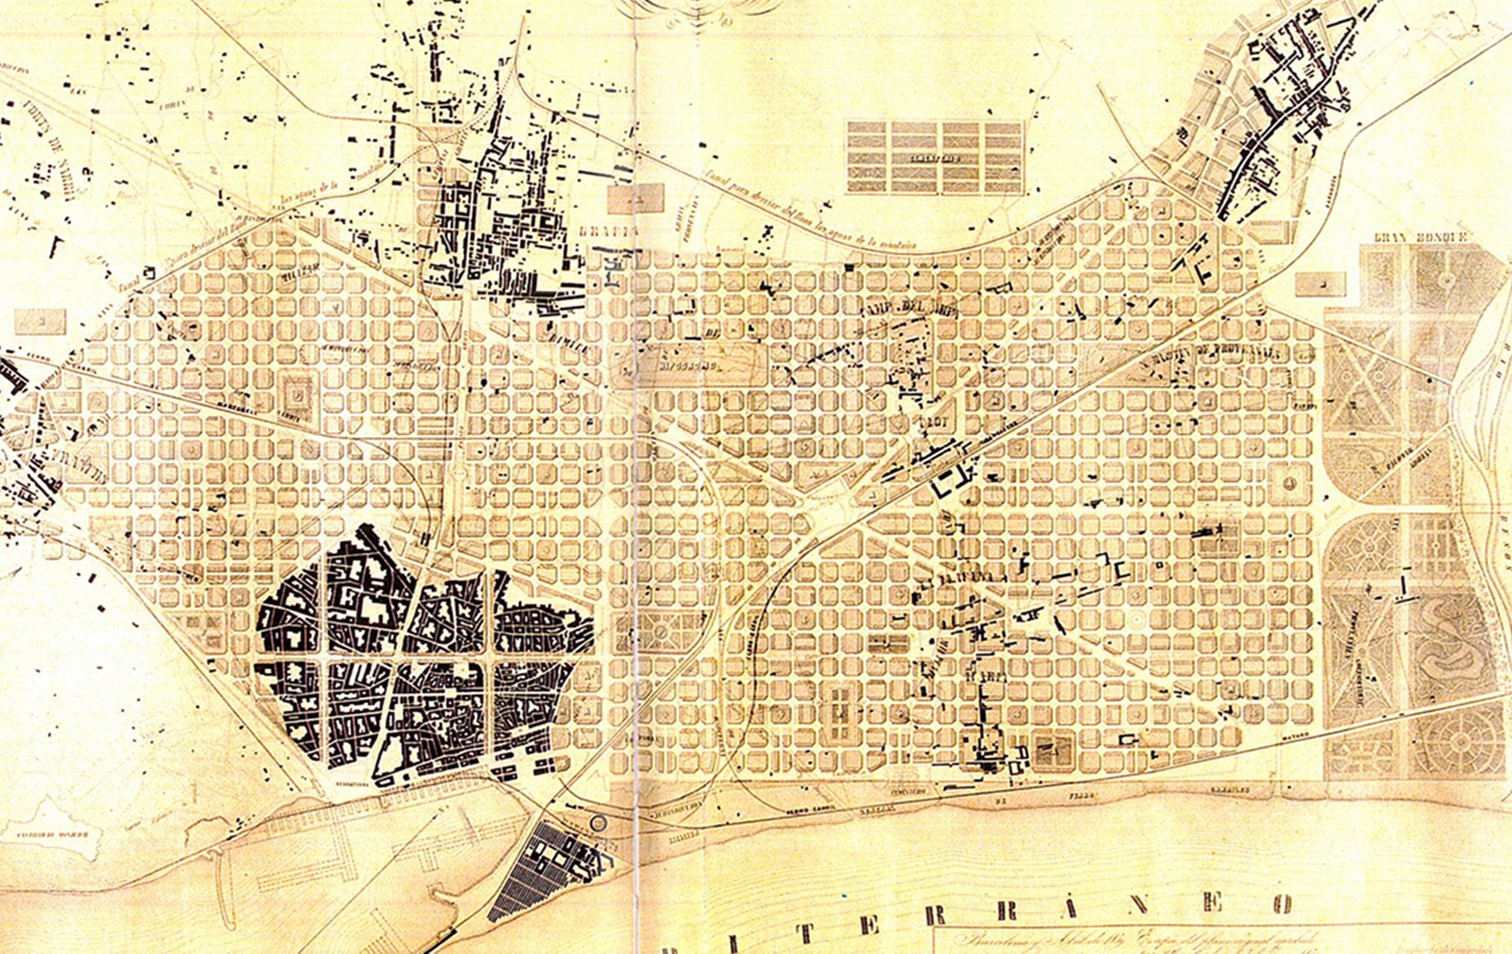 Originalplan der Stadterweiterung Barcelonas von 1859